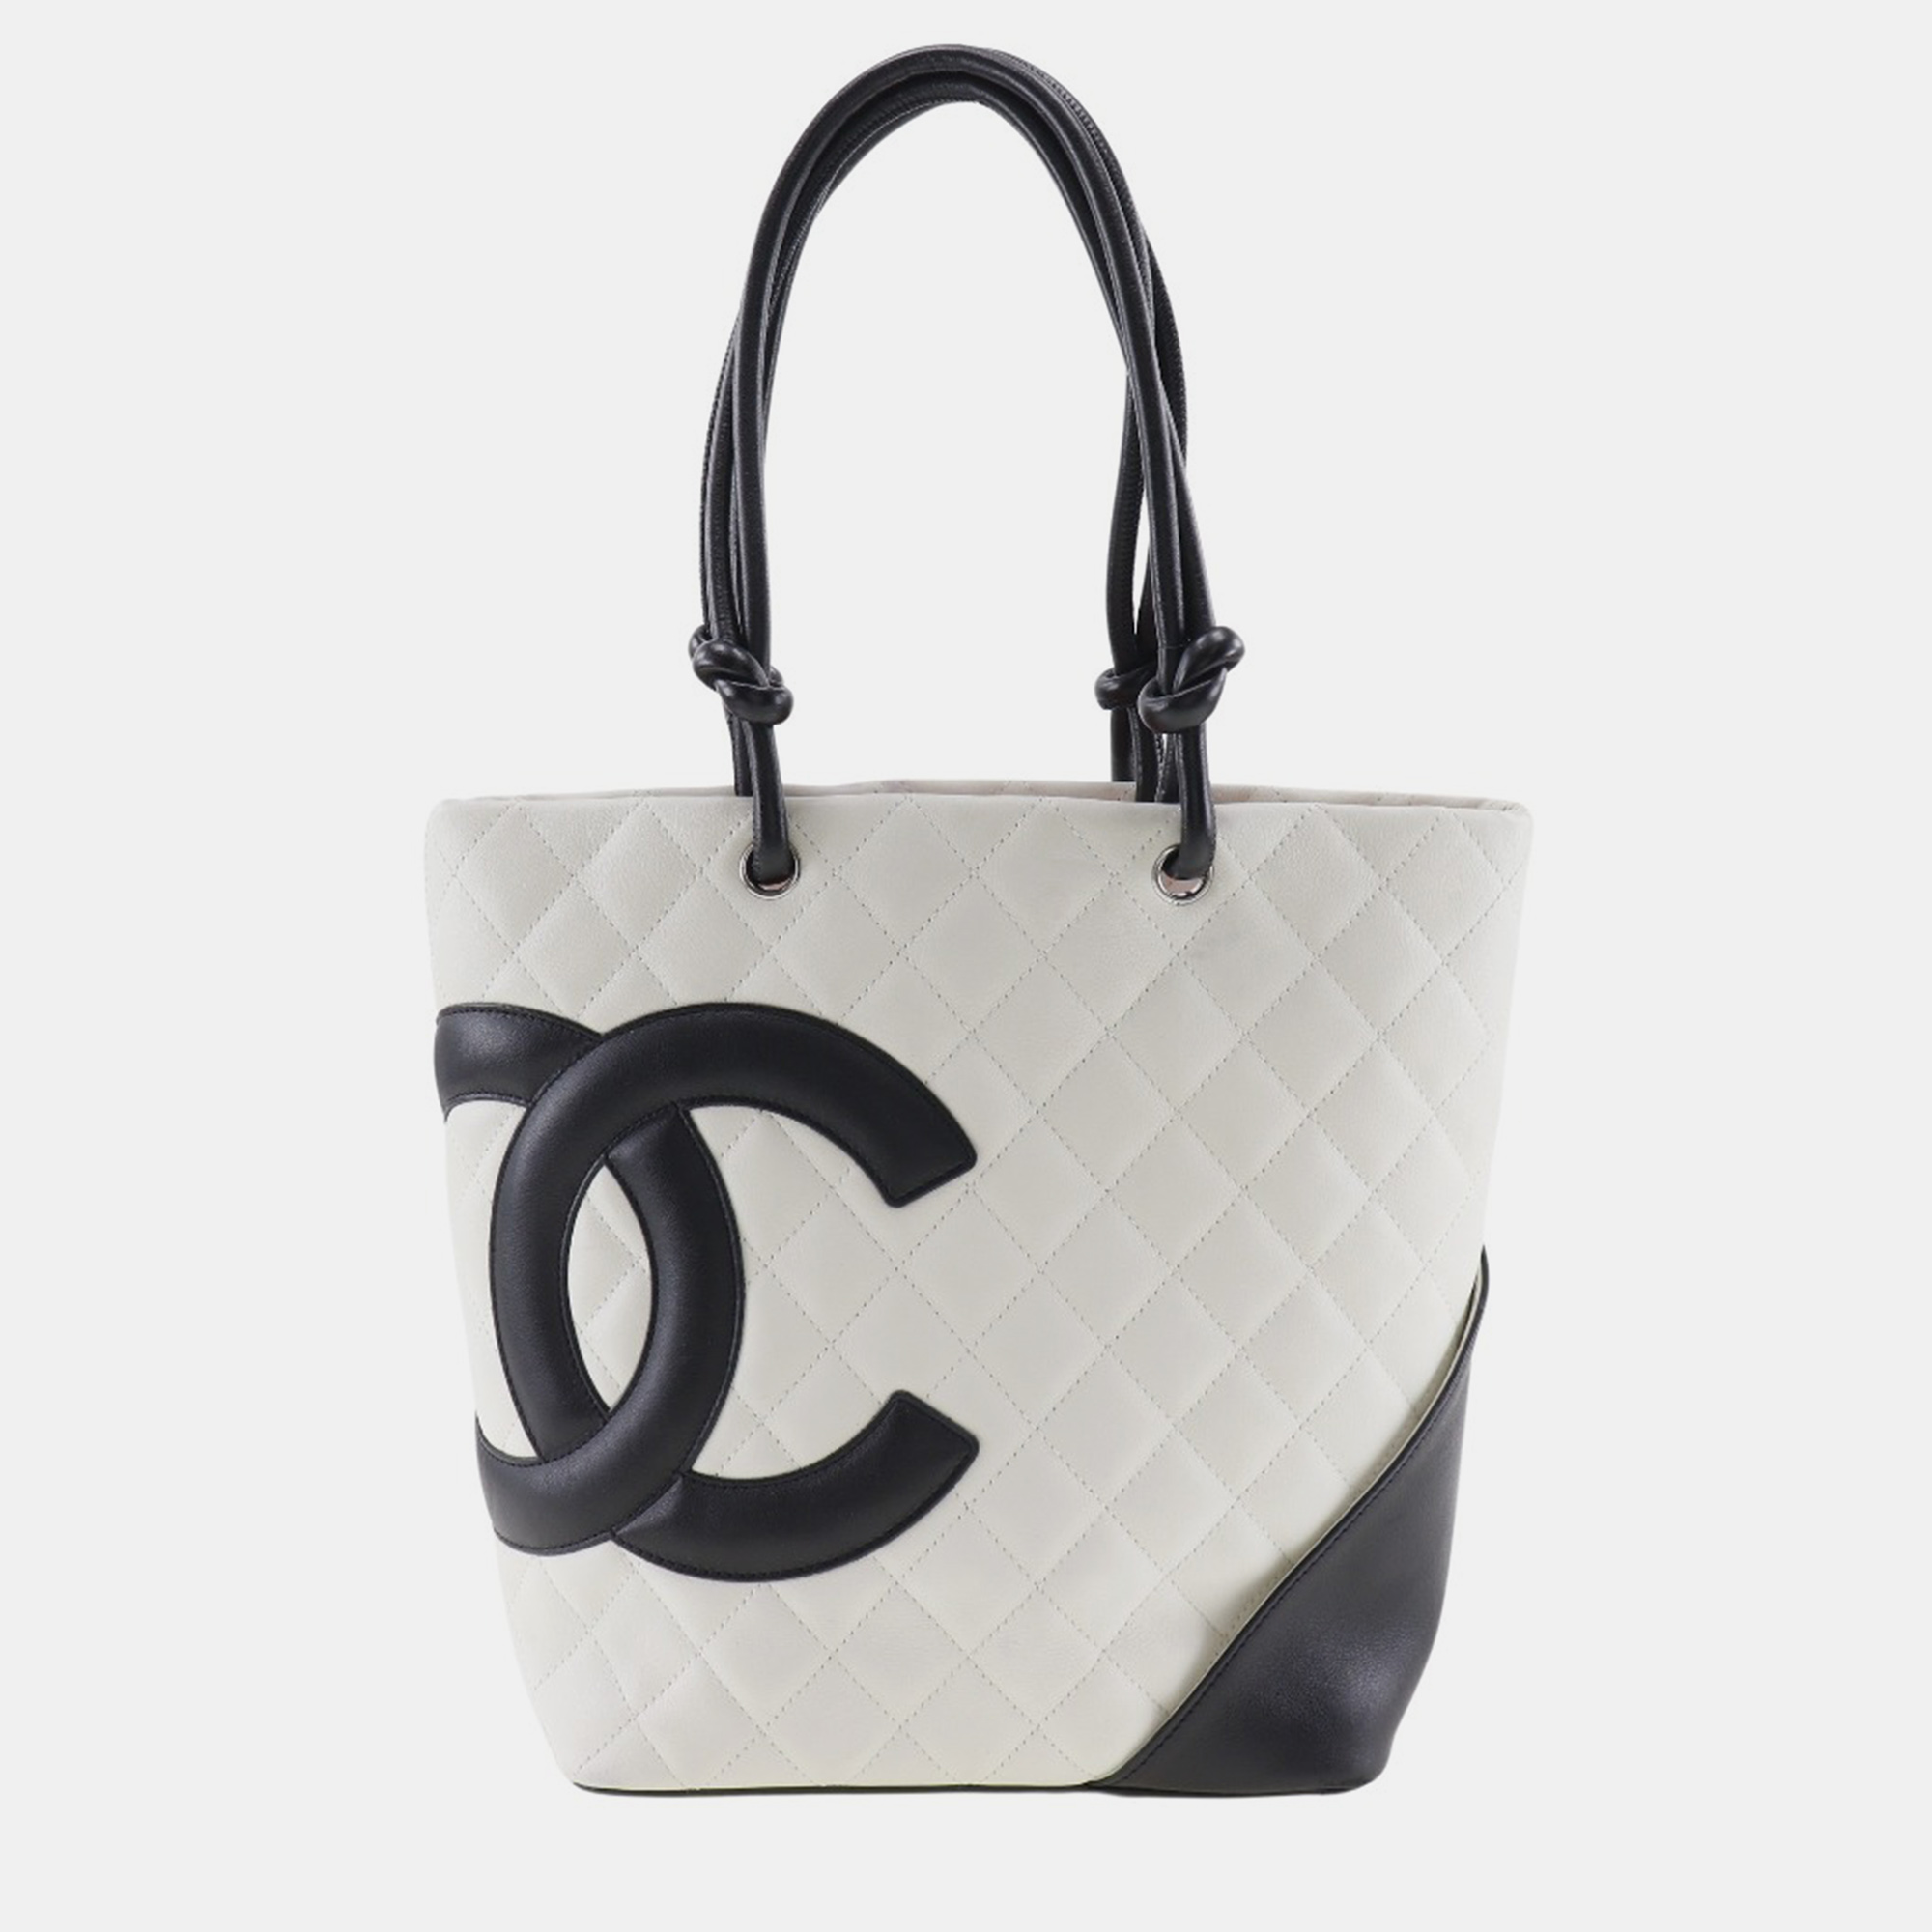 Chanel white/black leather small cambon ligne tote bag